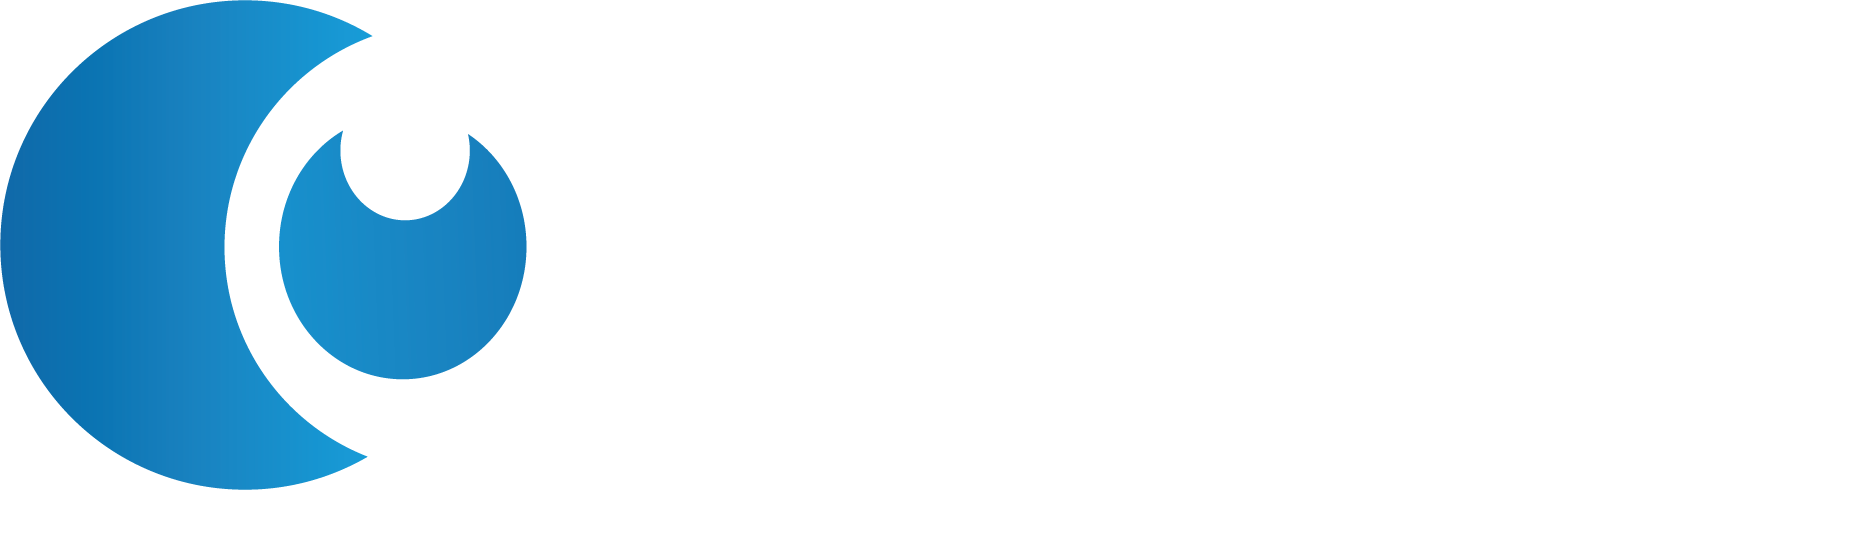 Centro Urológico Foscal